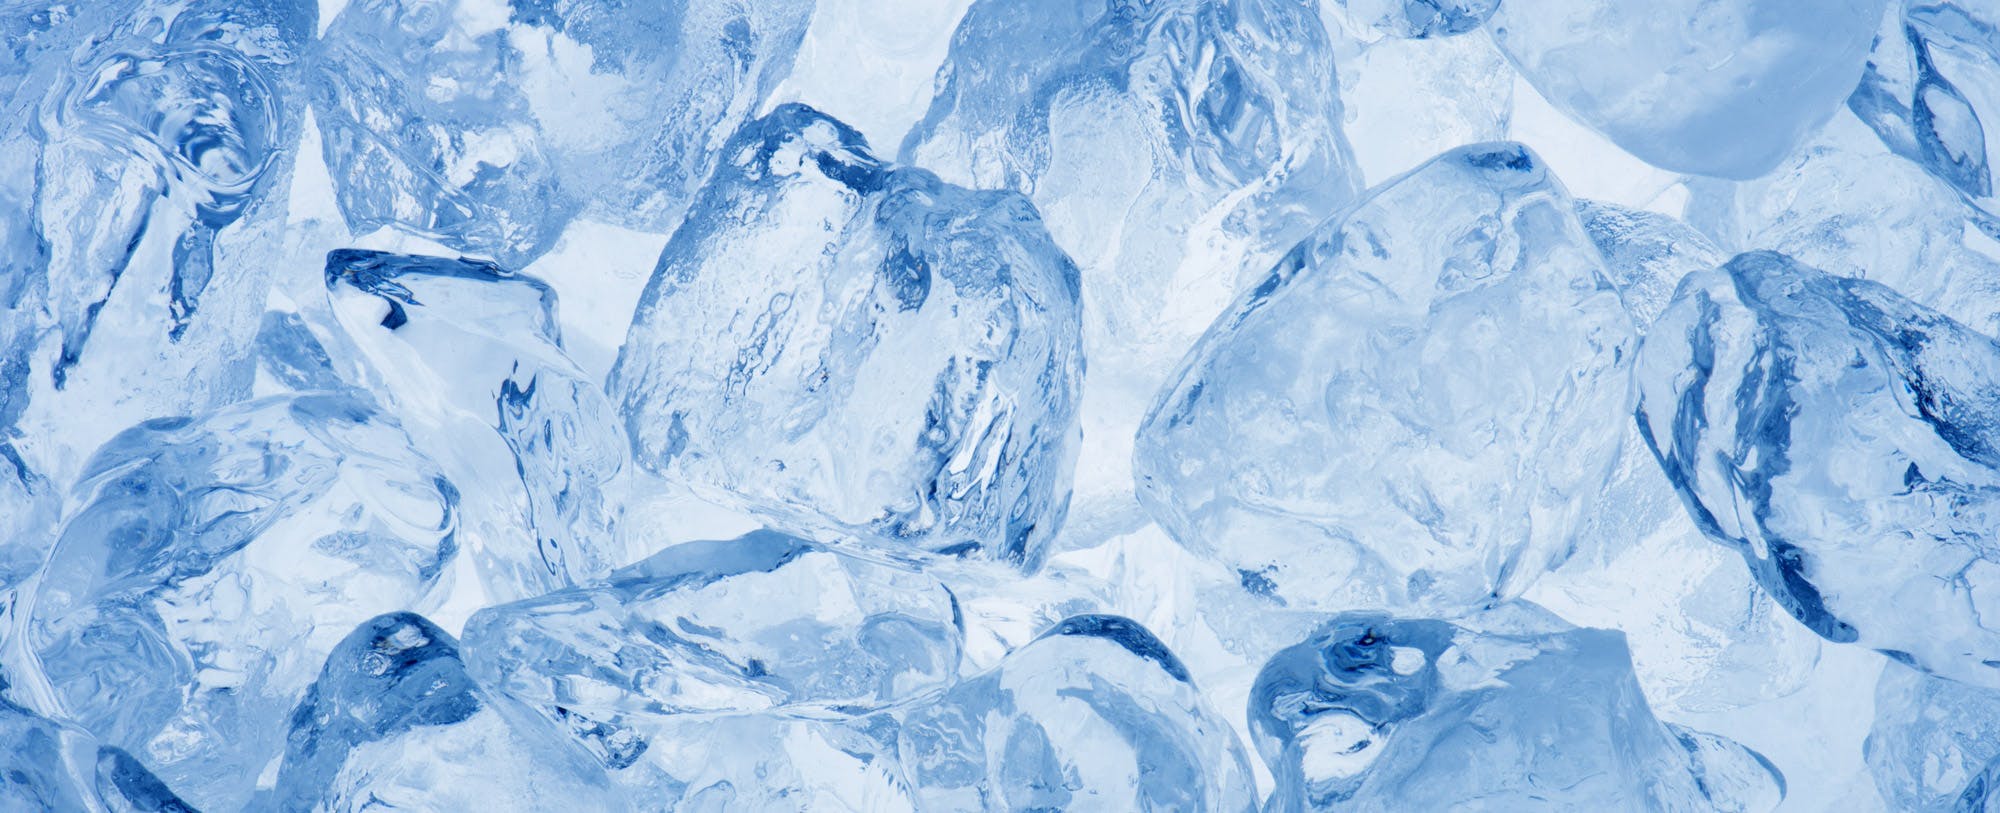 Brain Freeze: Top Ten Ice Facts